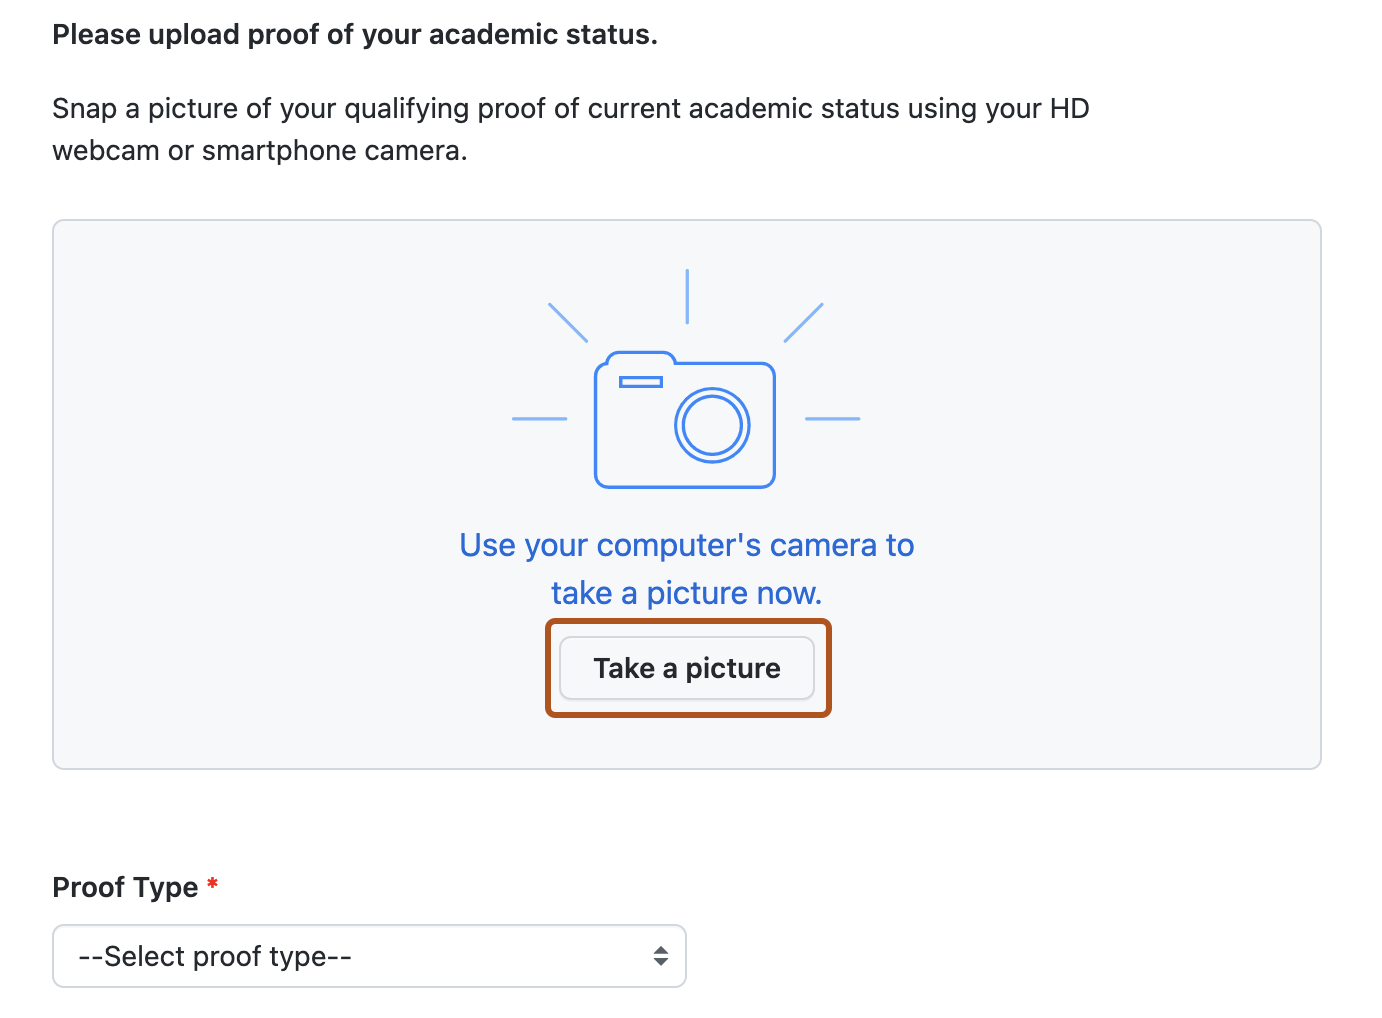 Снимок экрана: страница для предоставления подтверждения фотографии о вашем академическом статусе. Кнопка "Сделать фотографию" выделена темно-оранжевым цветом.